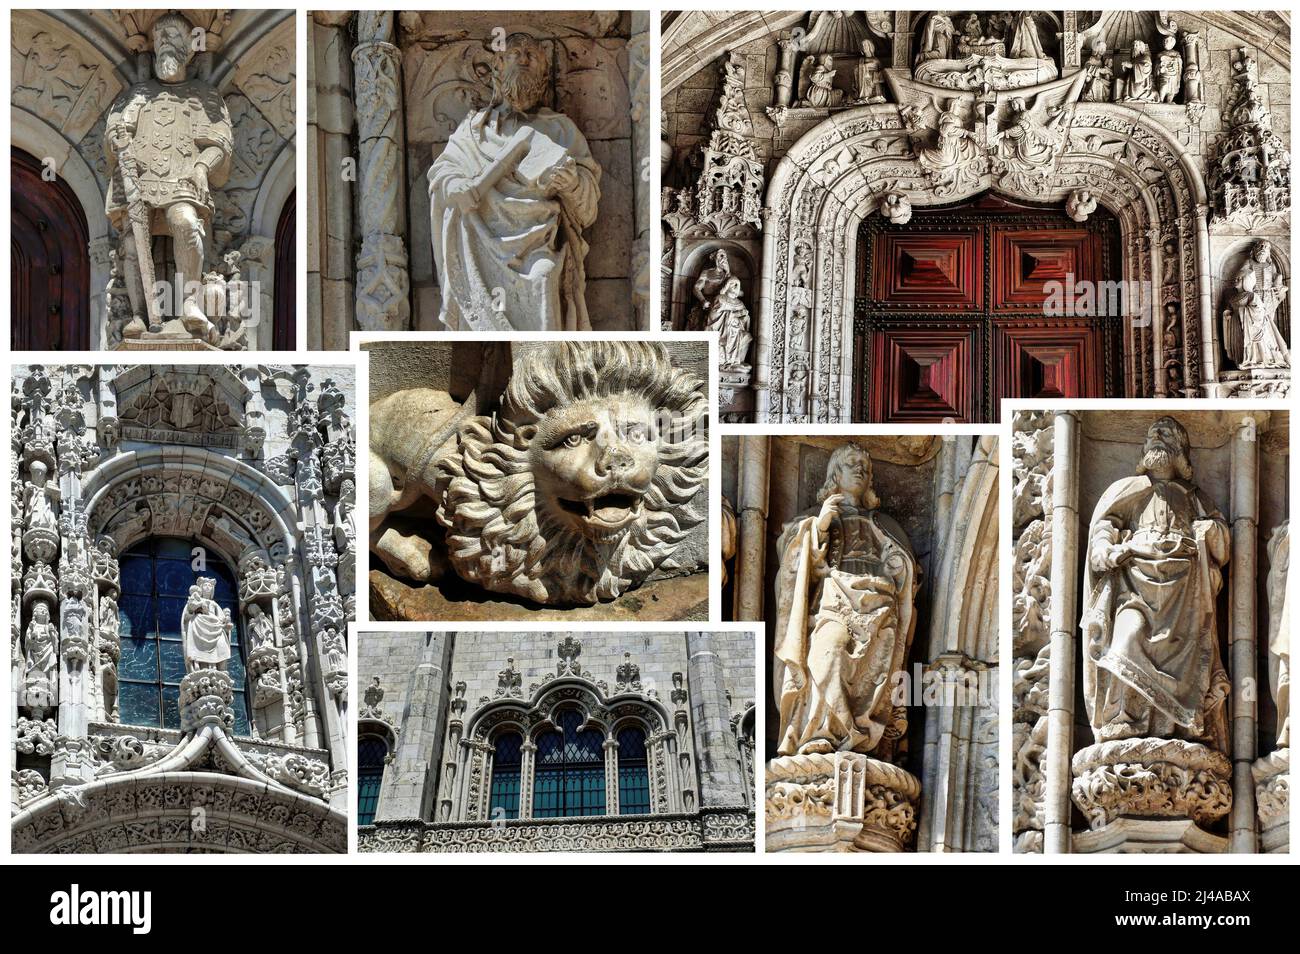 Einige architektonische Details des Klosters Jerónimos sind eines der wichtigsten Beispiele für den portugiesischen manuelinischen Architekturstil in Lissabon. Stockfoto